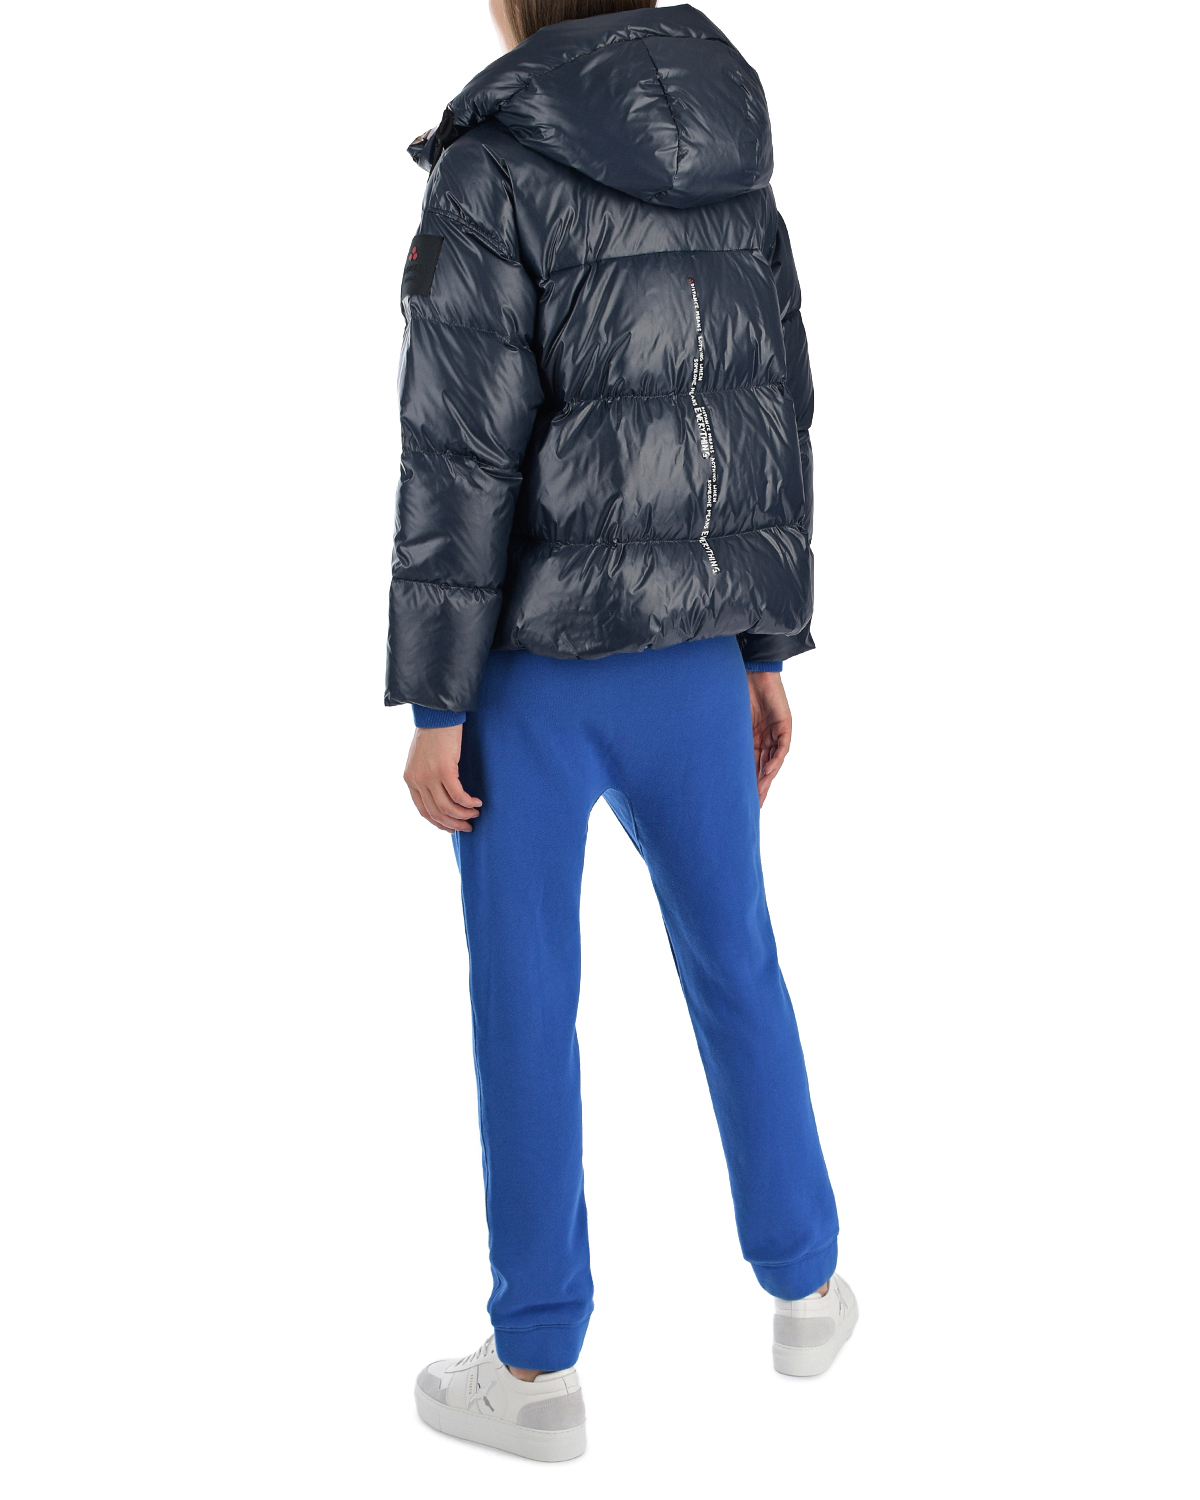 Зимняя двухсторонняя куртка Peuterey, размер 38, цвет синий - фото 4